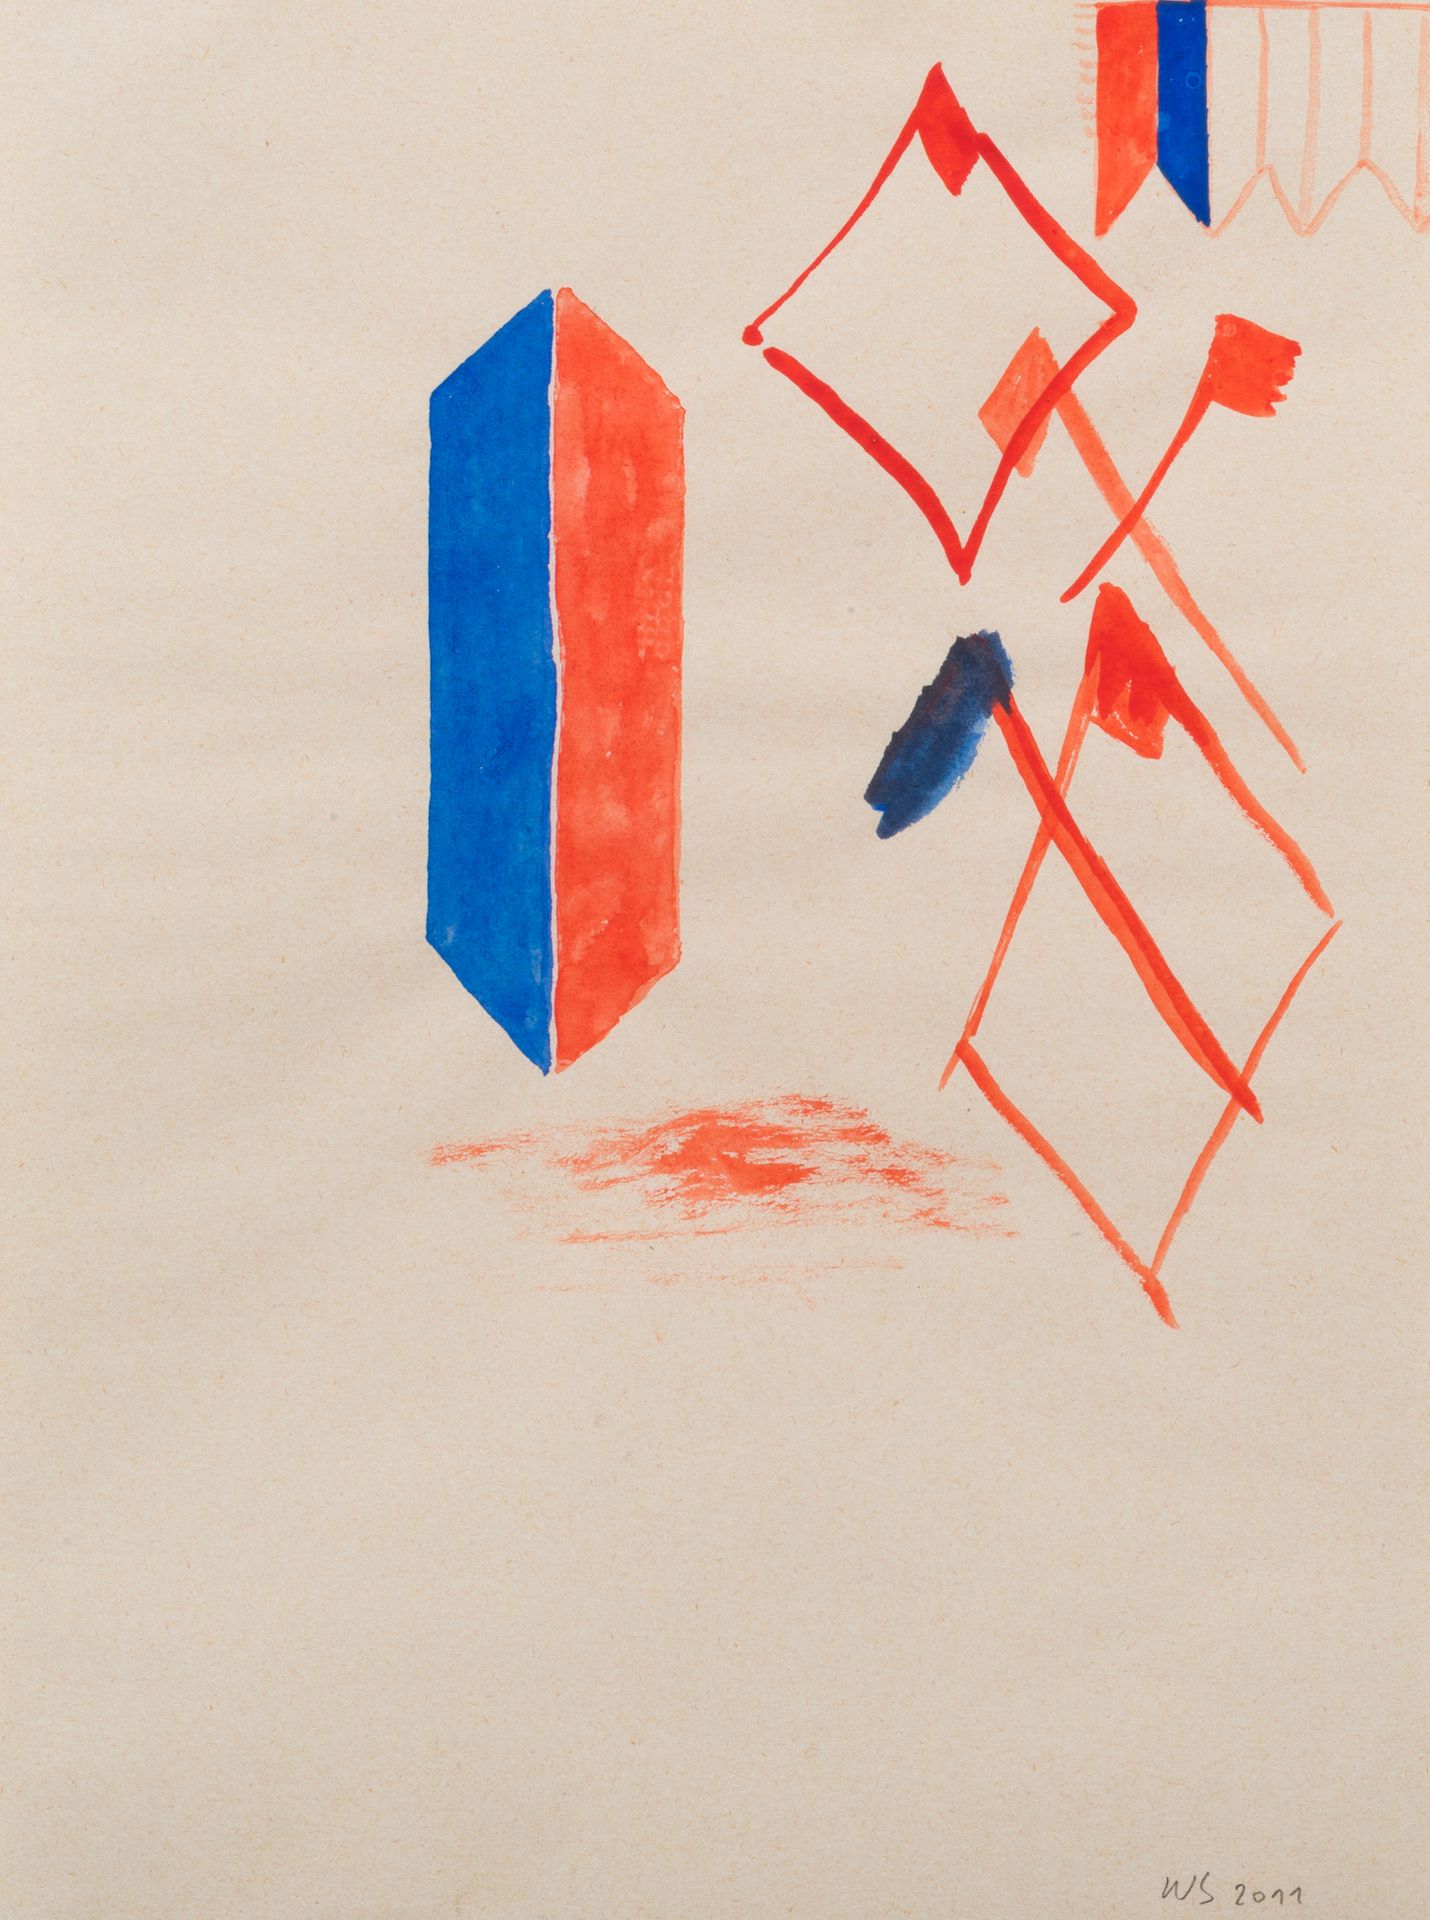 WALTER SWENNEN (NÉ EN 1946) 无题，2011年。
纸上水粉画。
右下方有签名和日期。
水粉画在纸上。

28 x 20,7 cm。